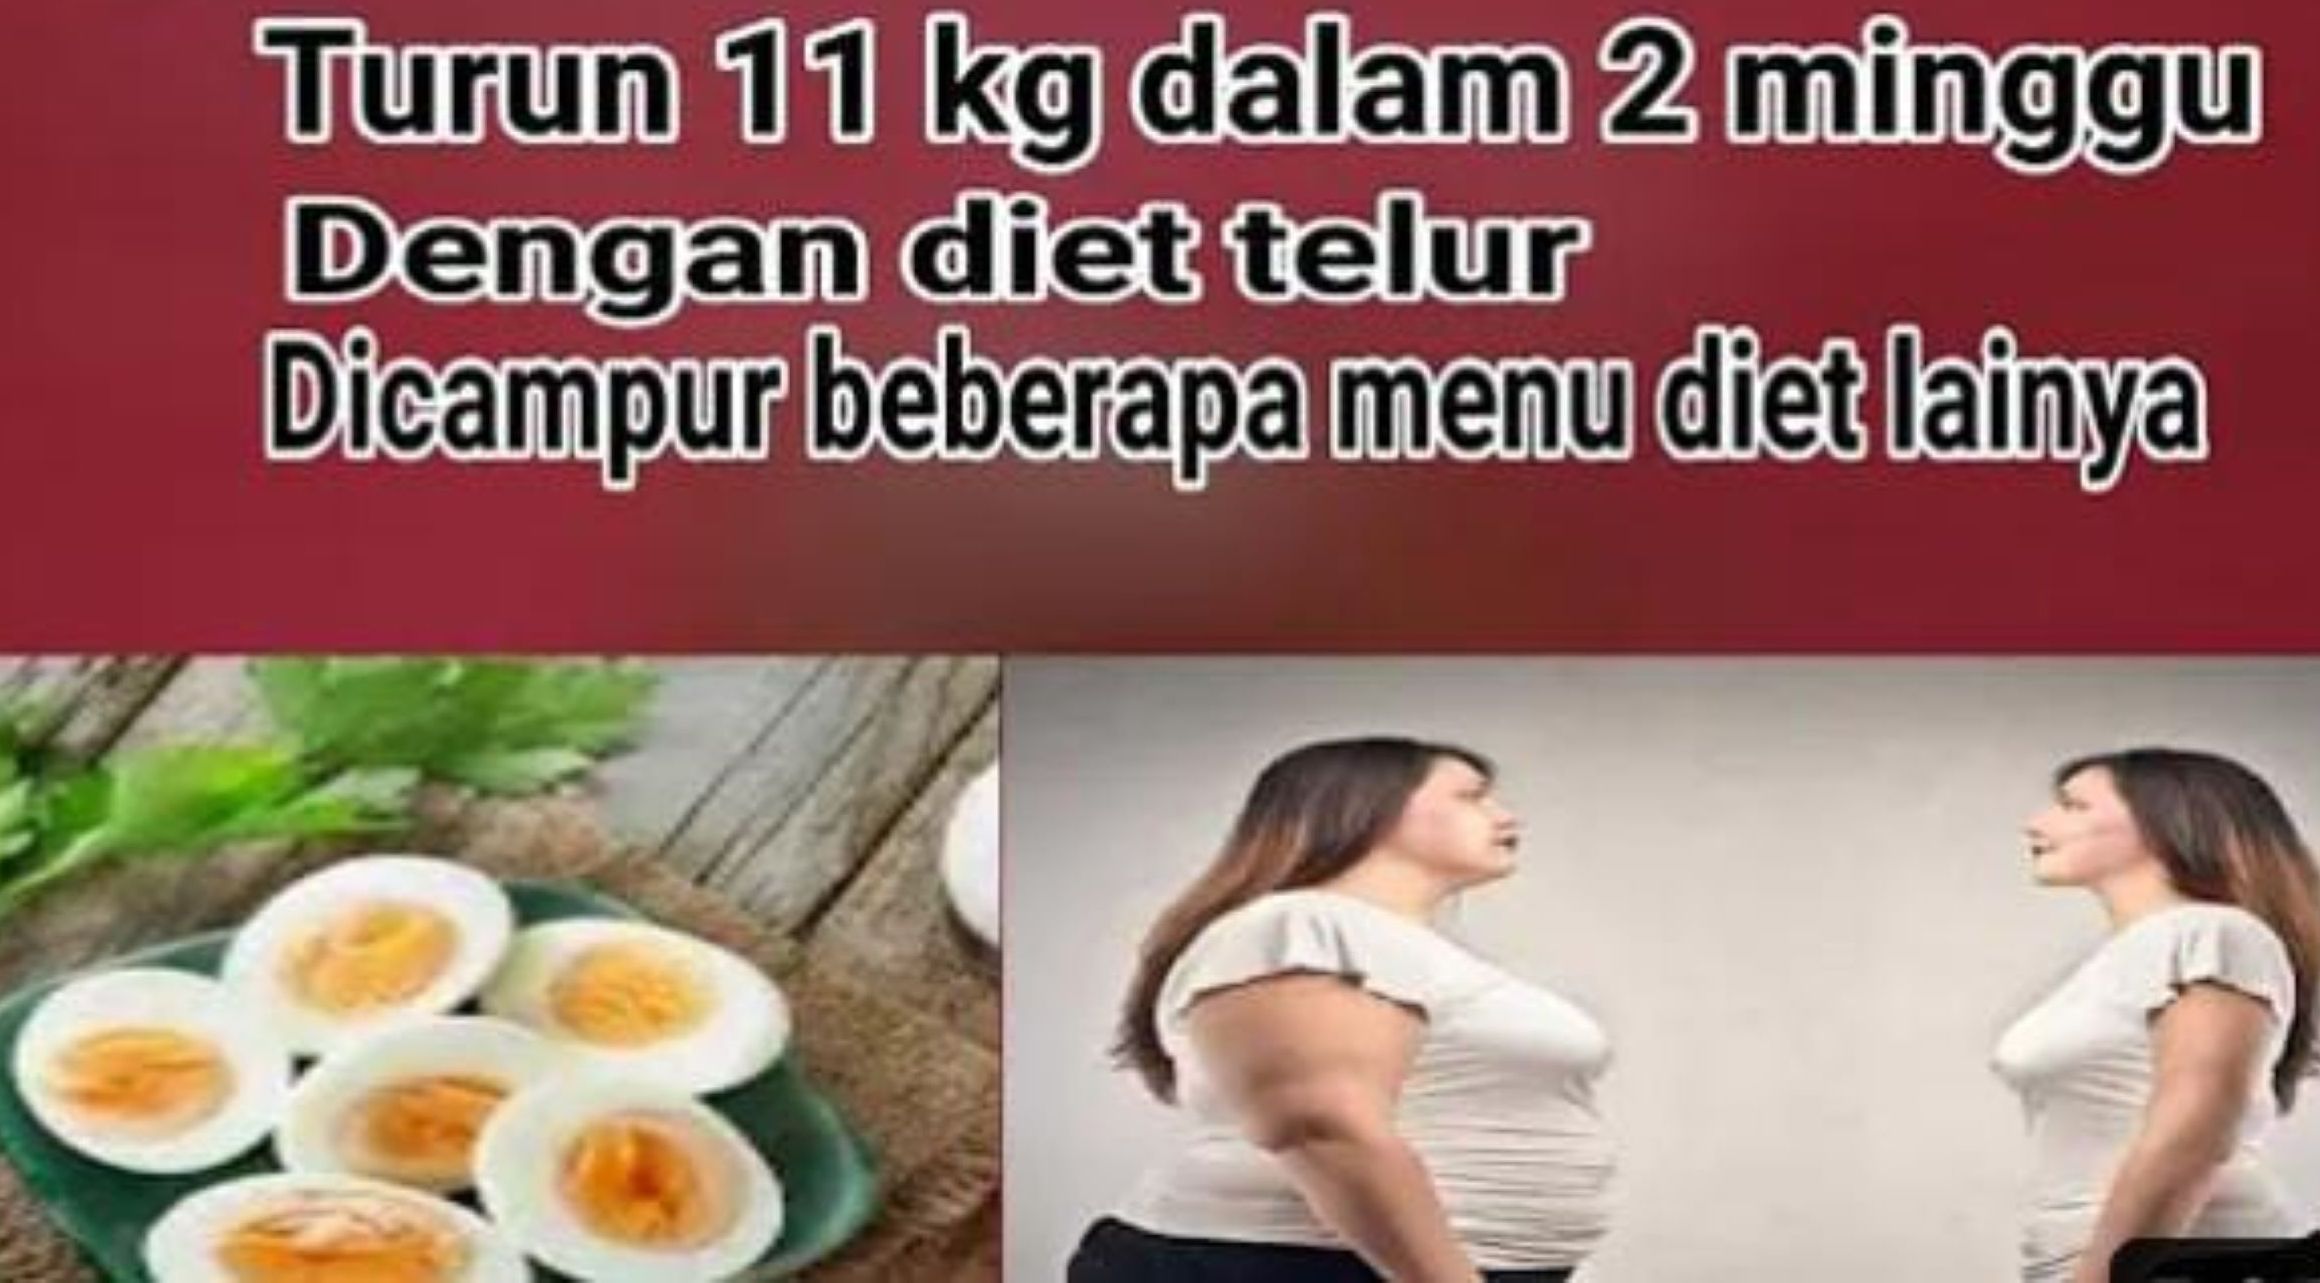 Diet telur rebus dipercaya bisa menurunkan berat badan hingga 11 kg dalam waktu 2 Minggu/